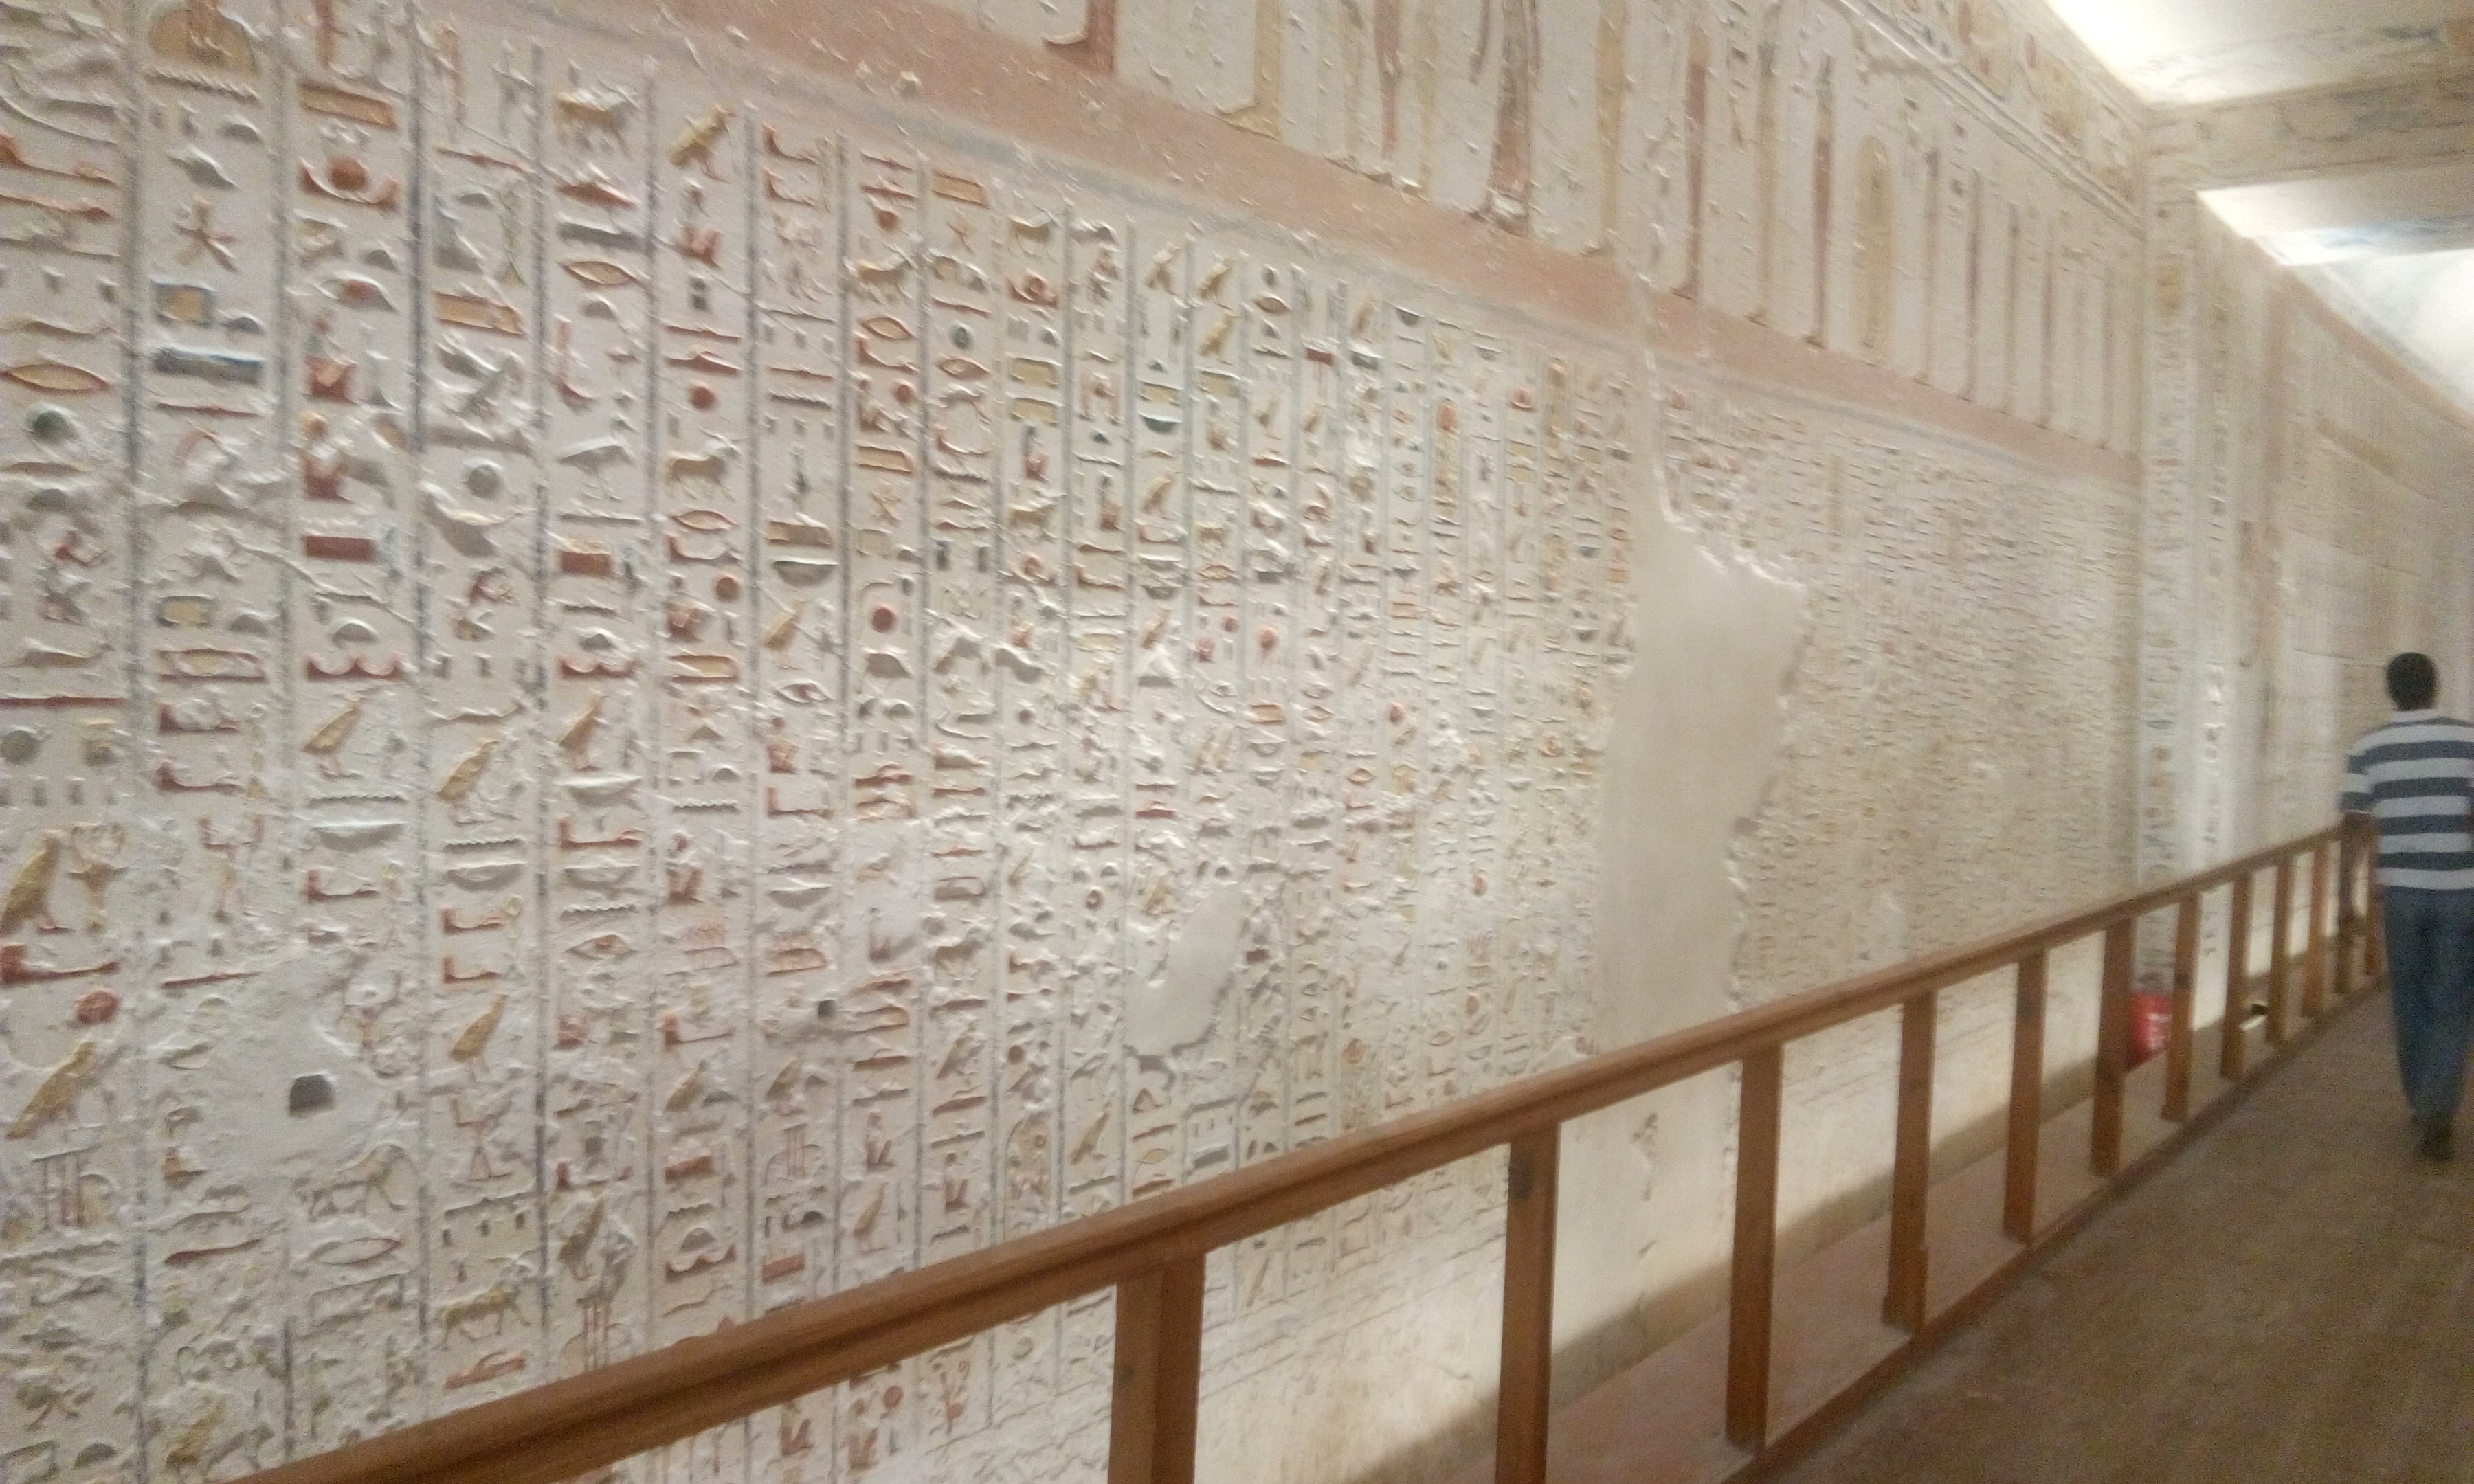 جداريات فرعونية داخل مقبرة توت عنخ امون بالأقصر